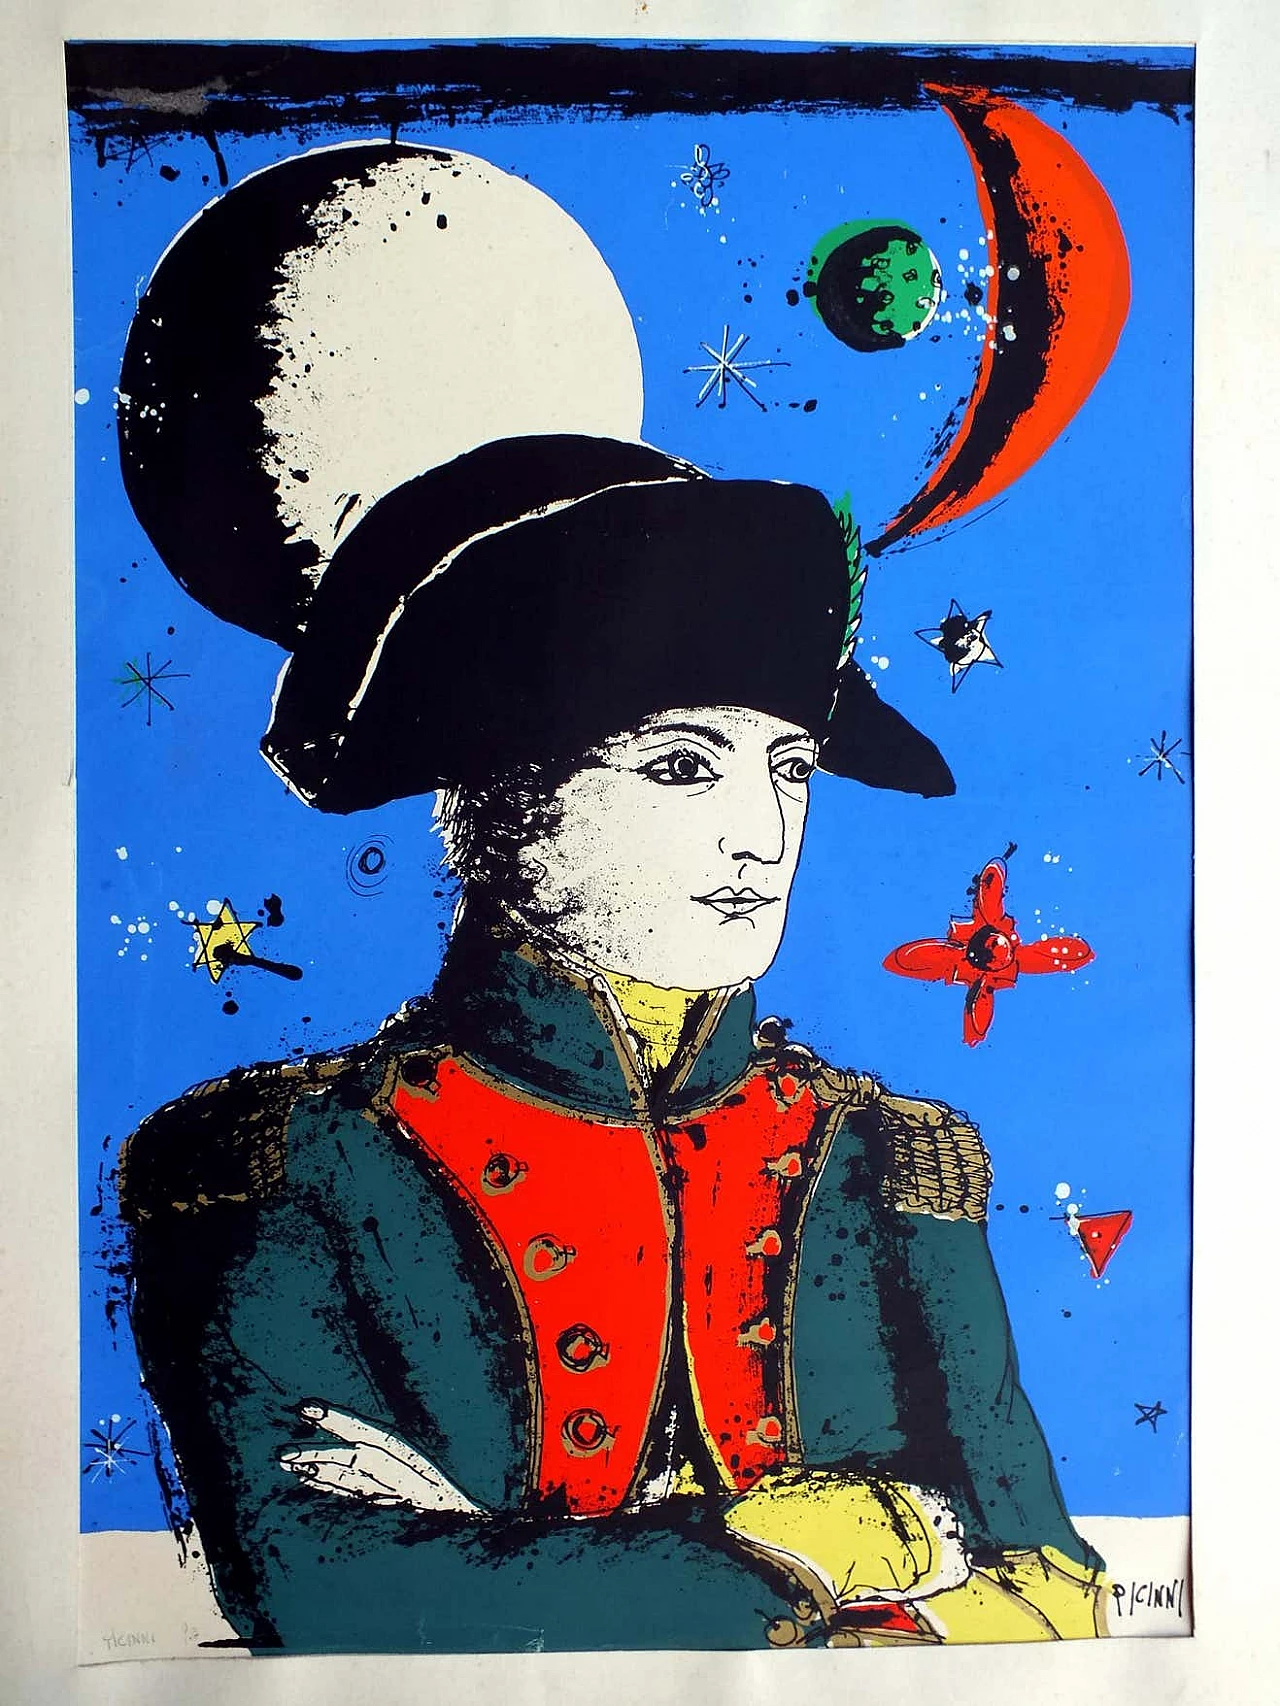 Gennaro Picinni, Napoleone, serigrafia, anni '70 2